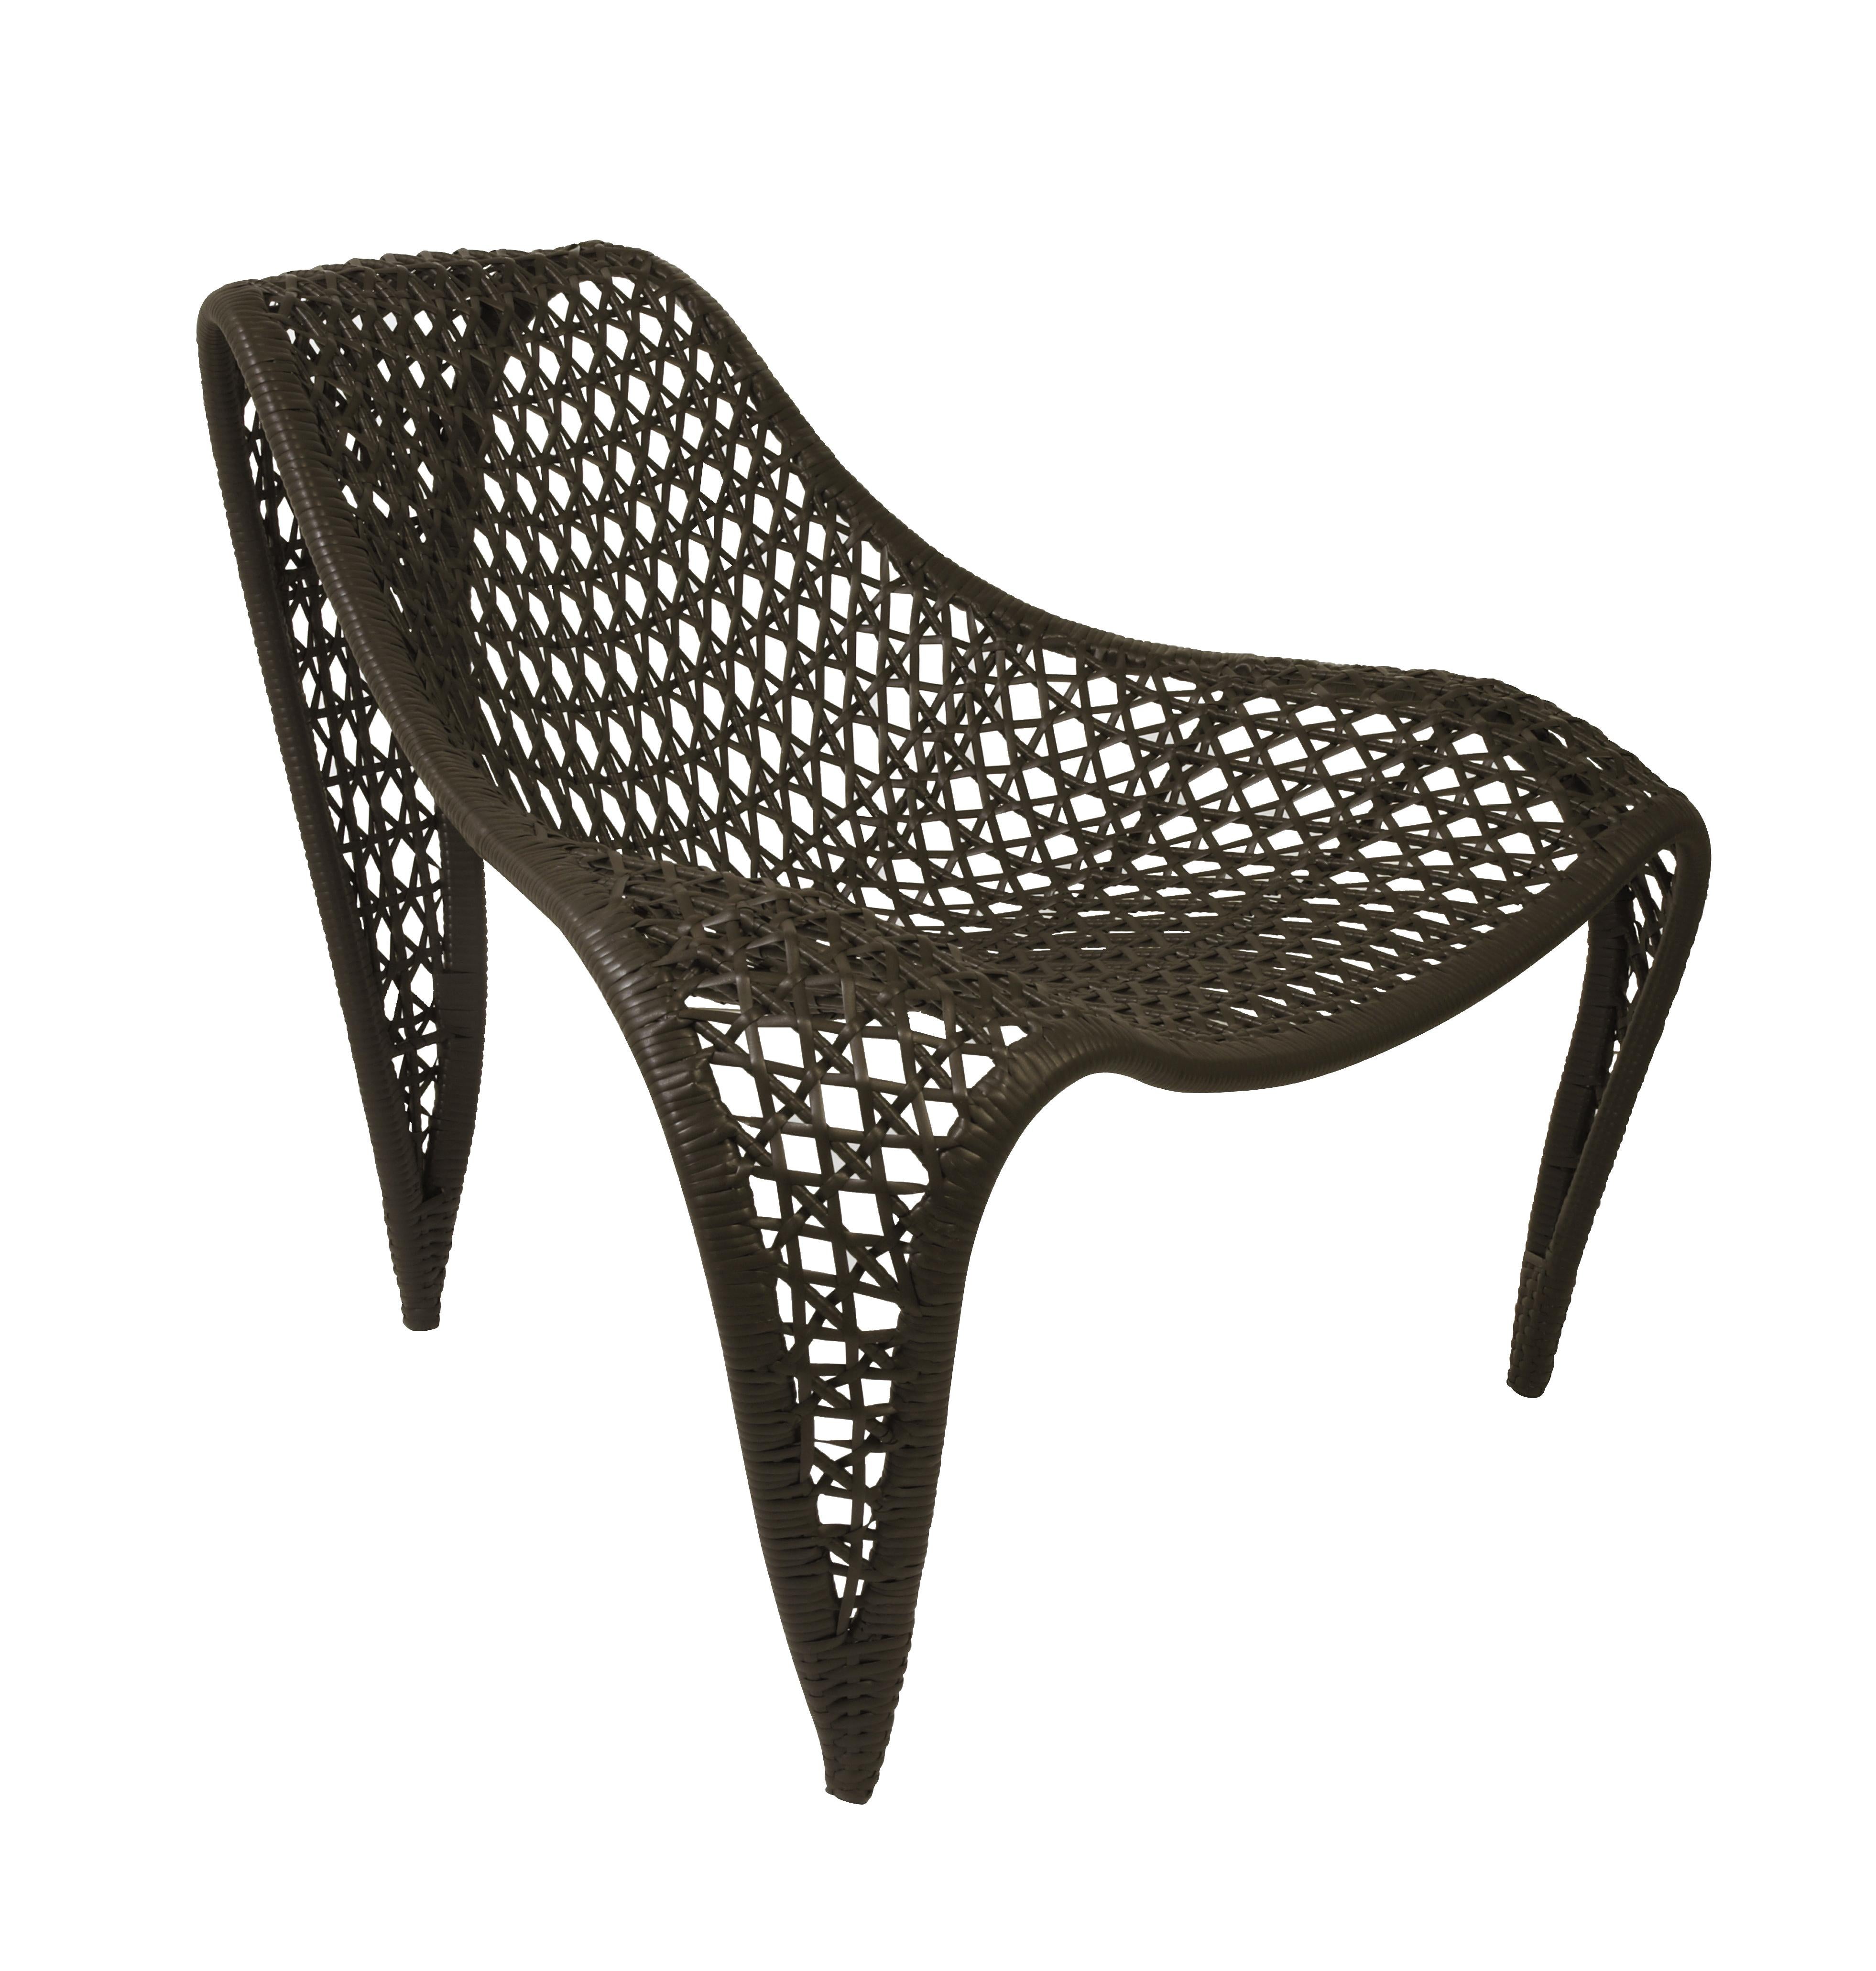 La forme distincte de la chaise est enveloppée d'un cuir méticuleusement tissé, ce qui rehausse à la fois son style et son confort.